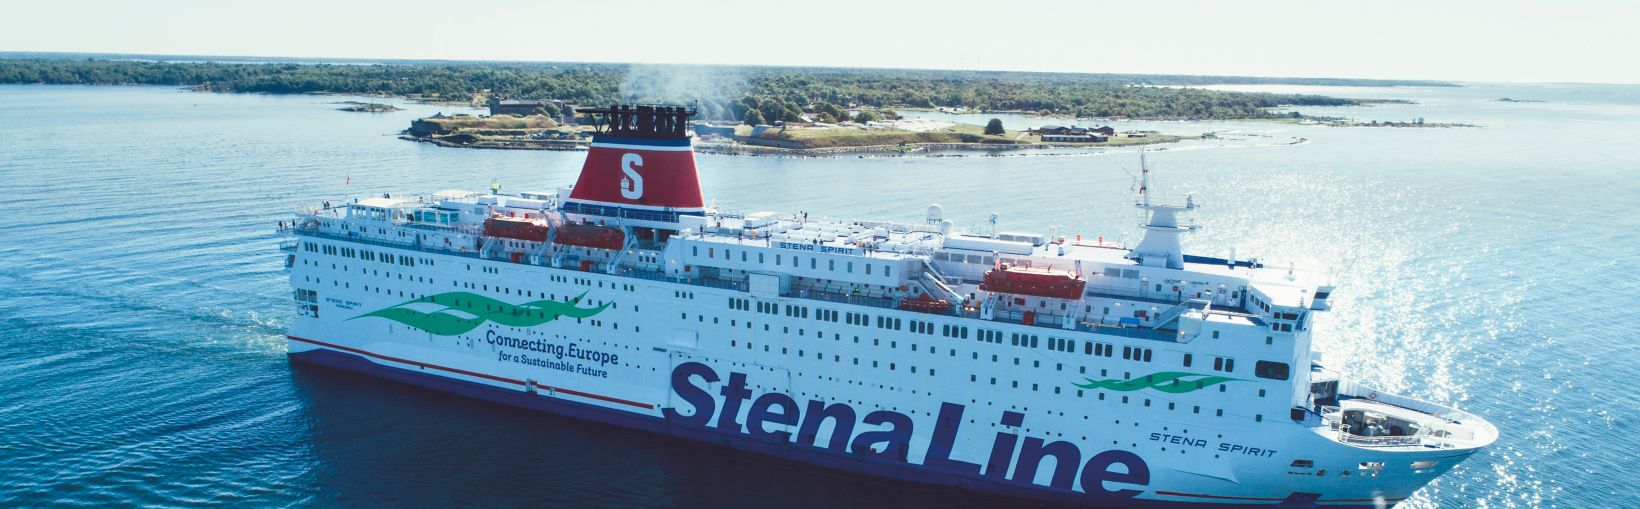 Stena Spirit ferry at sea